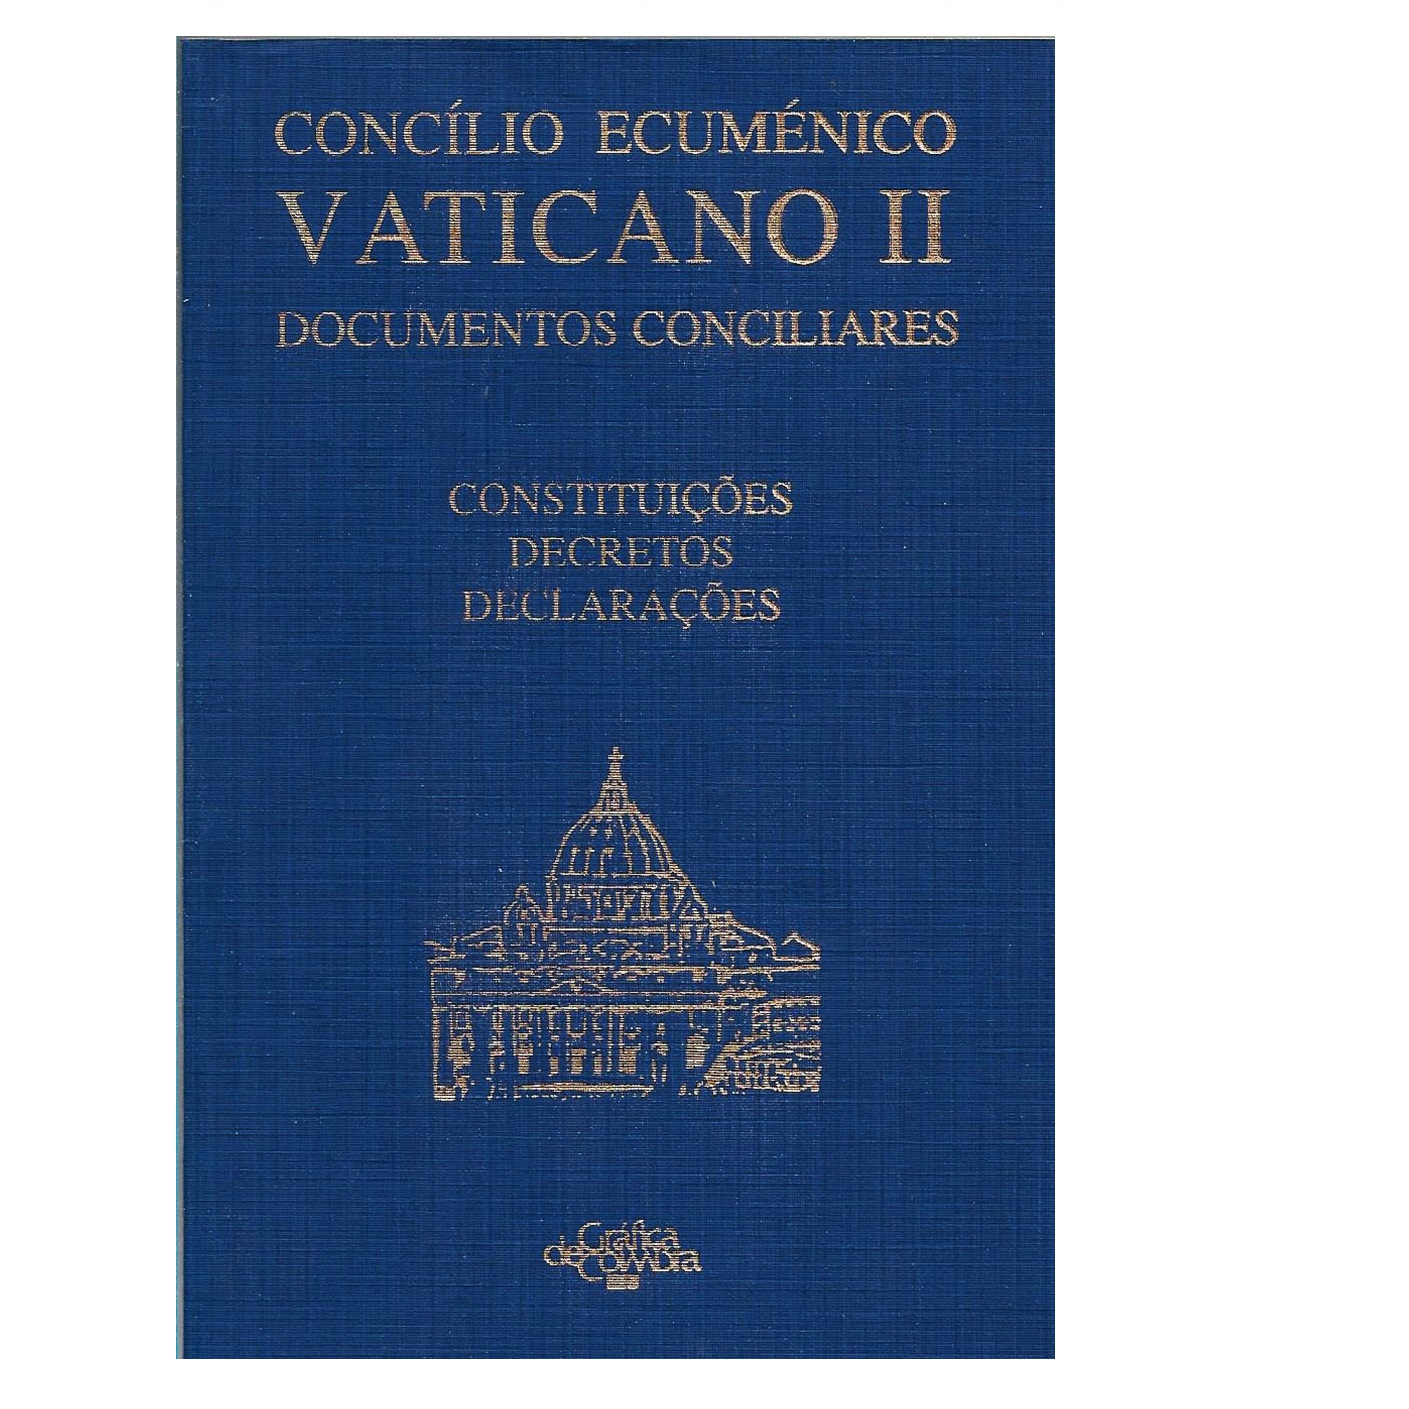 PDF) O Laicato nos documentos do Concílio Vaticano II